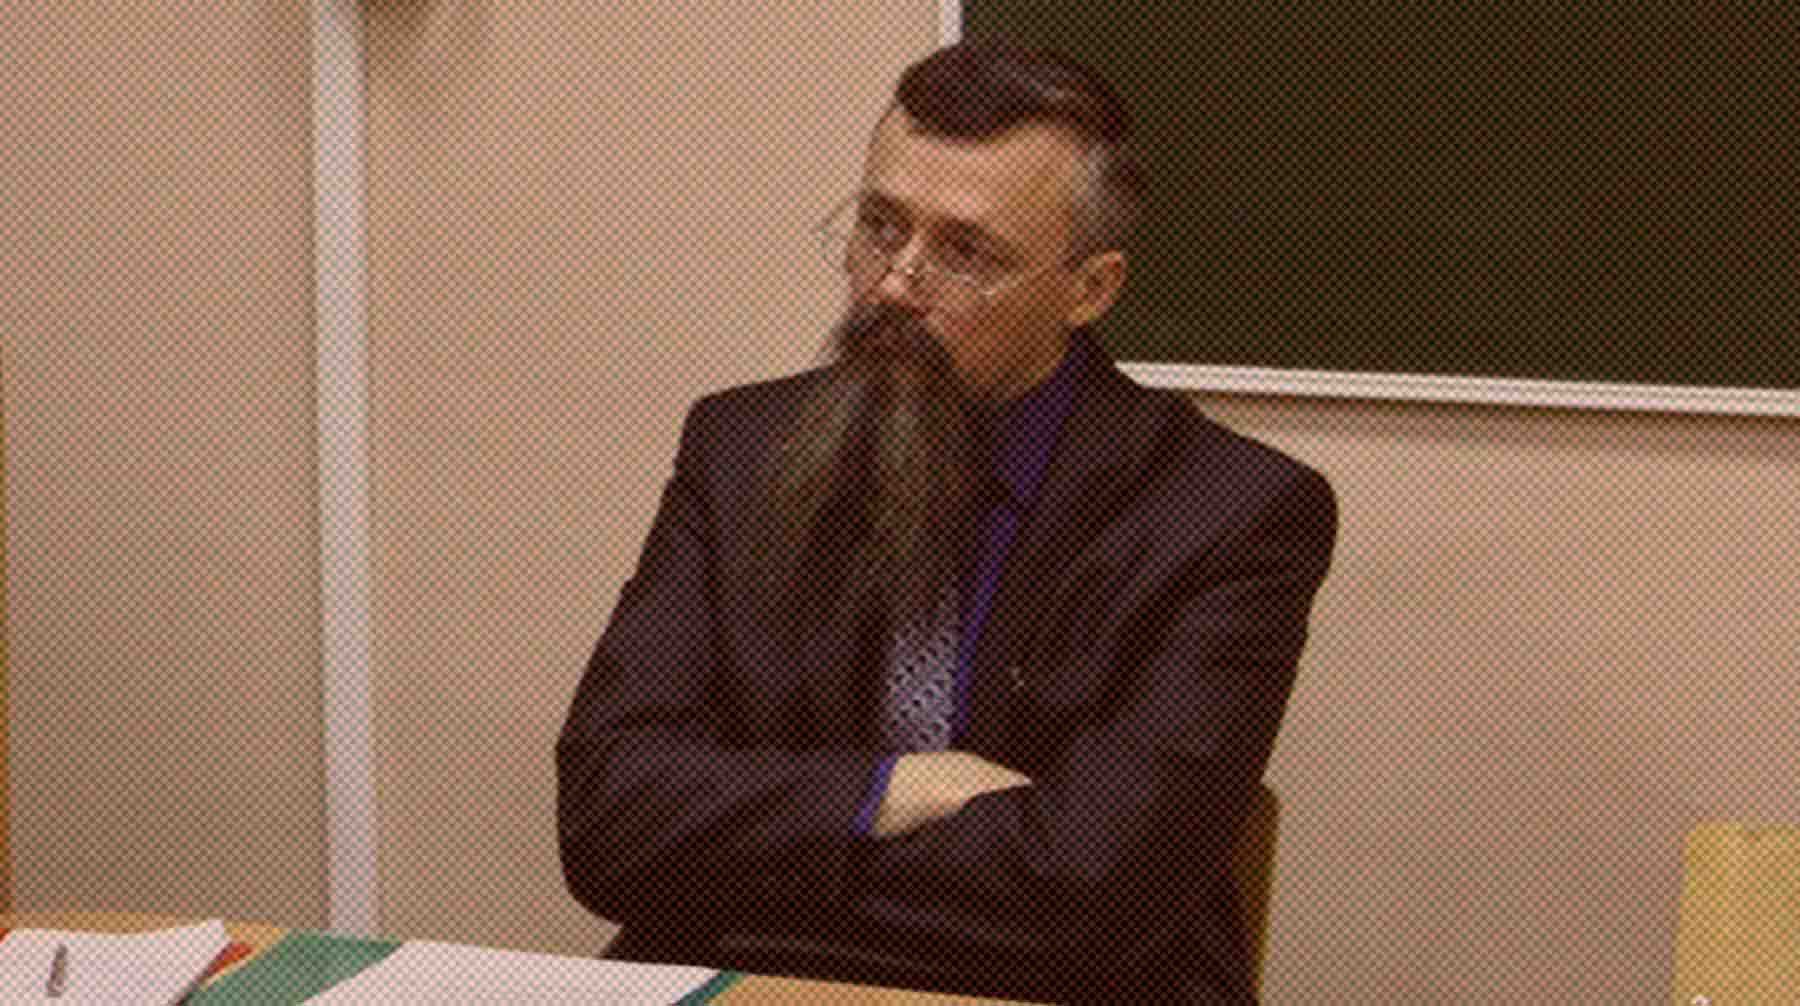 Dailystorm - Опубликована запись лекции профессора пермского вуза во время стрельбы